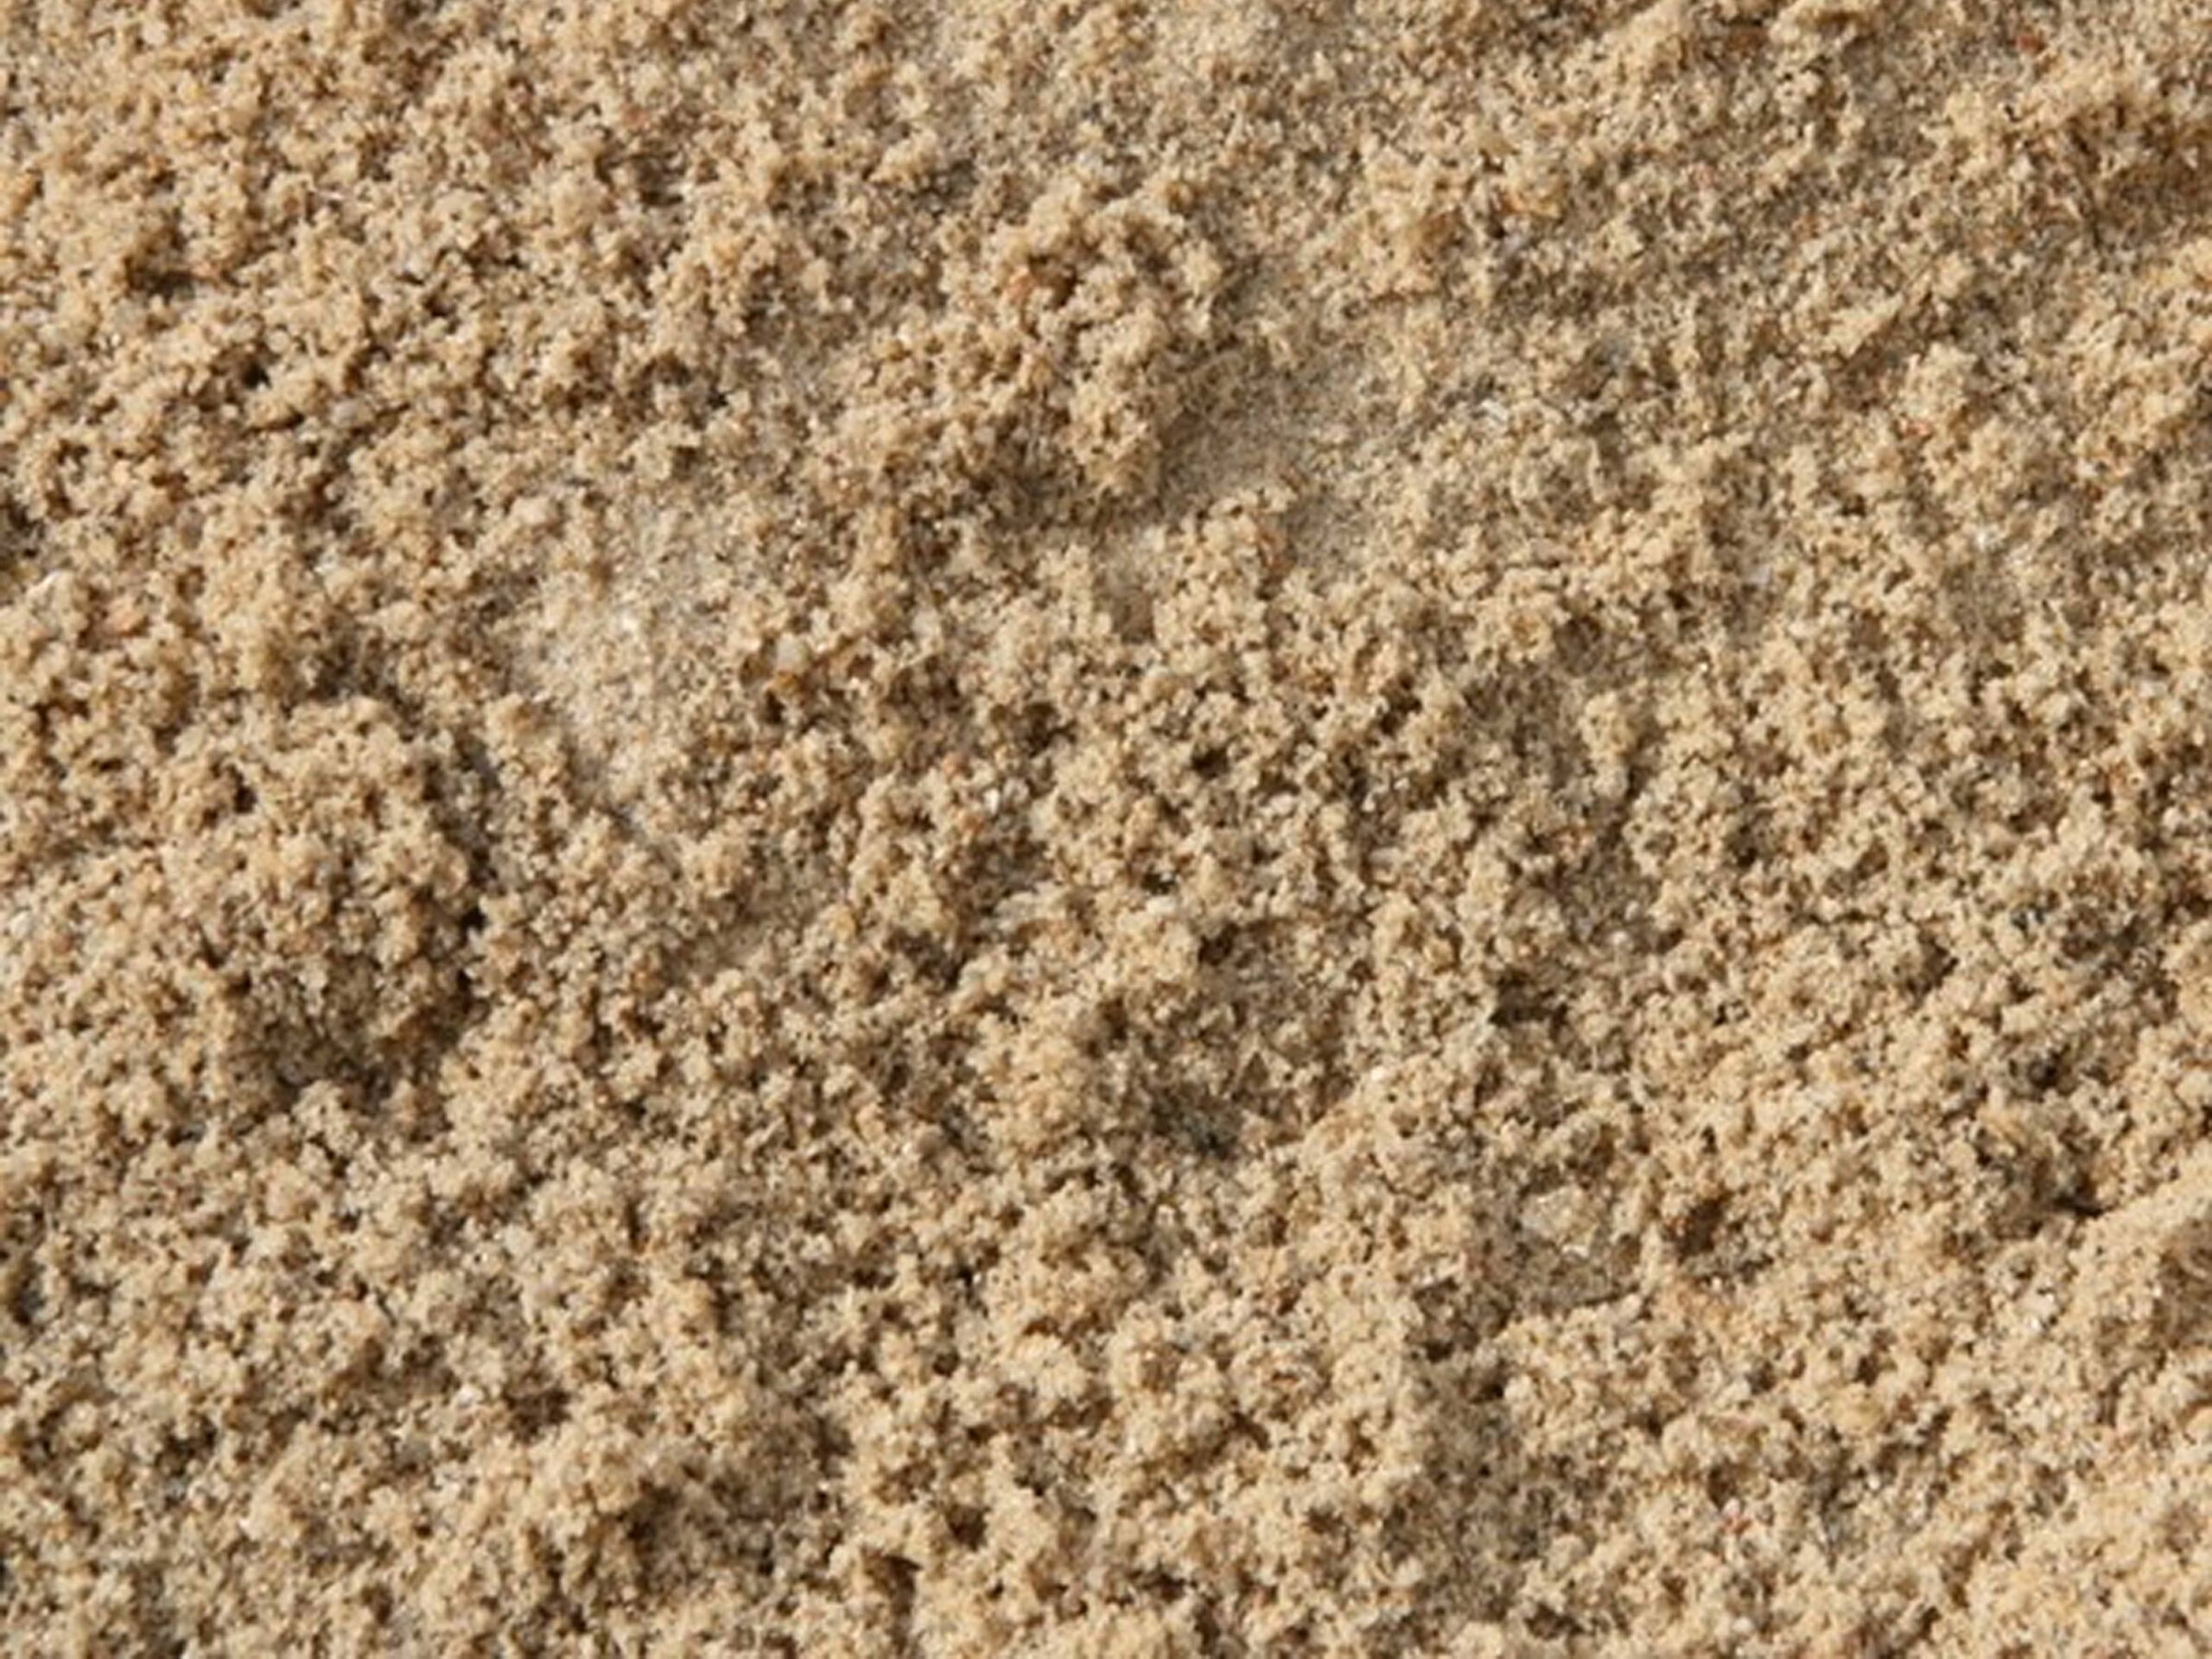 Visuel de sable assainissement en 0/5 siliceux